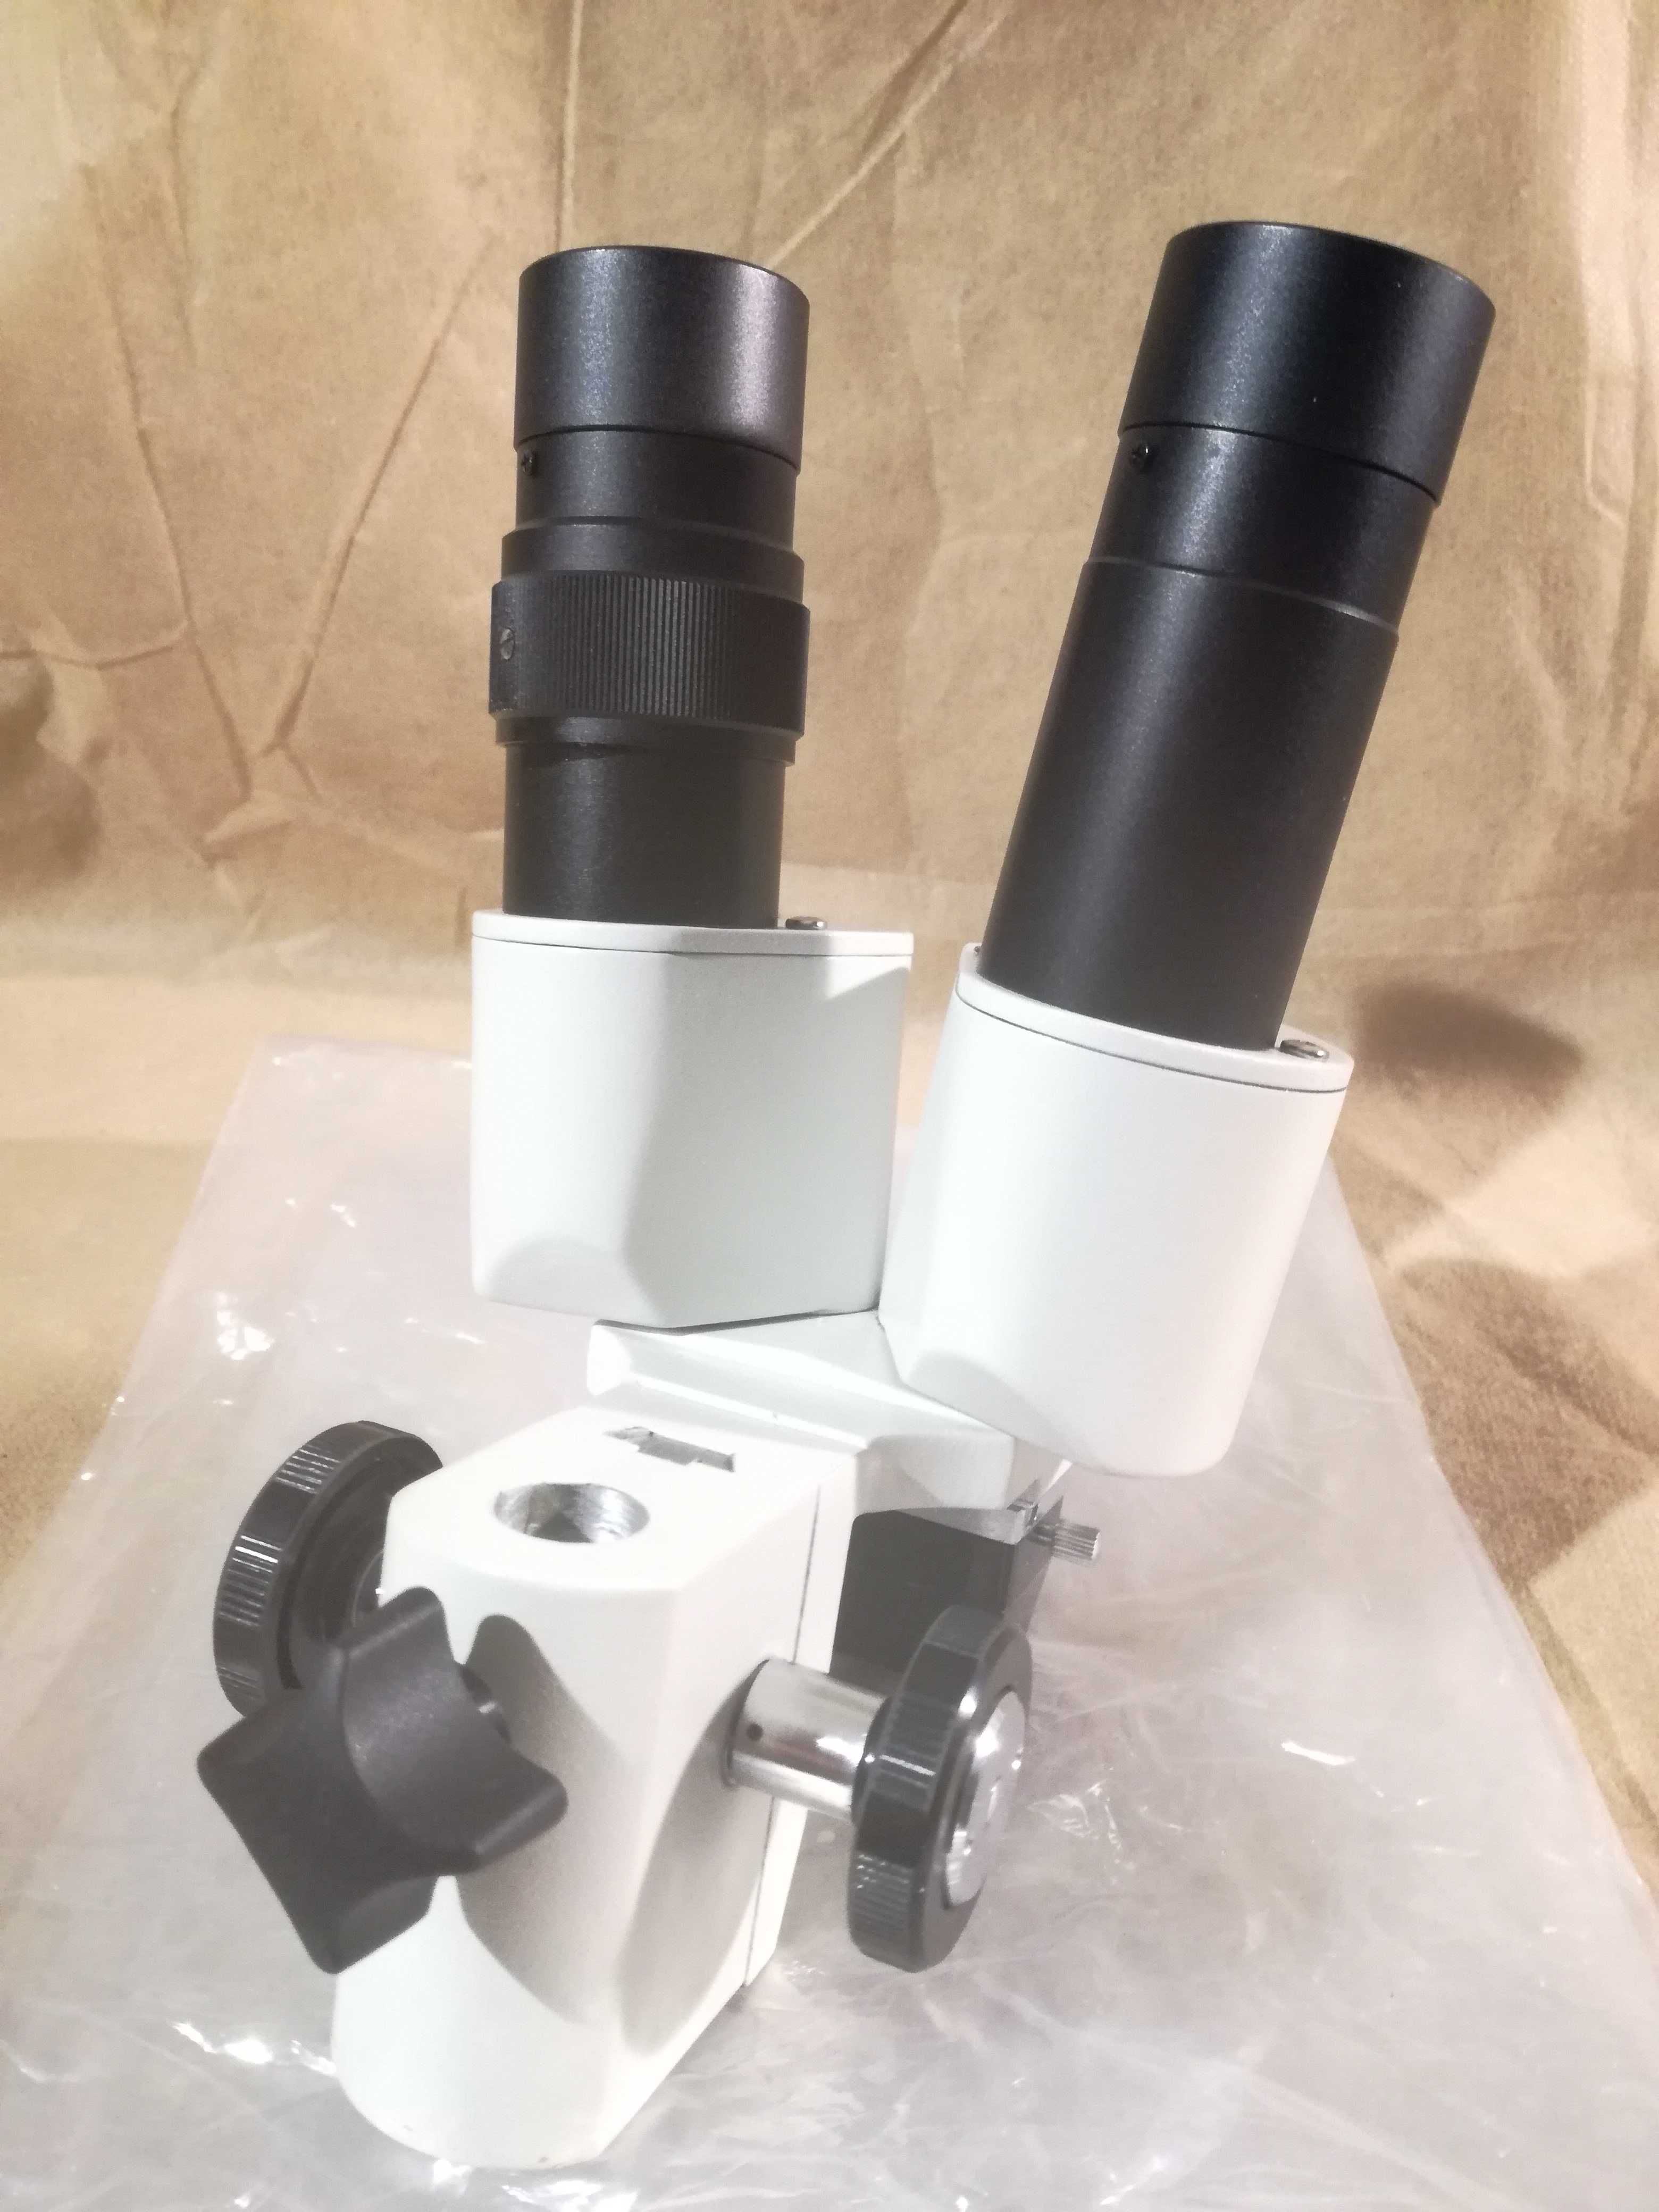 Mikroskop stereoskopowy 20x serwis GSM lutowanie elektronika pzo mbc